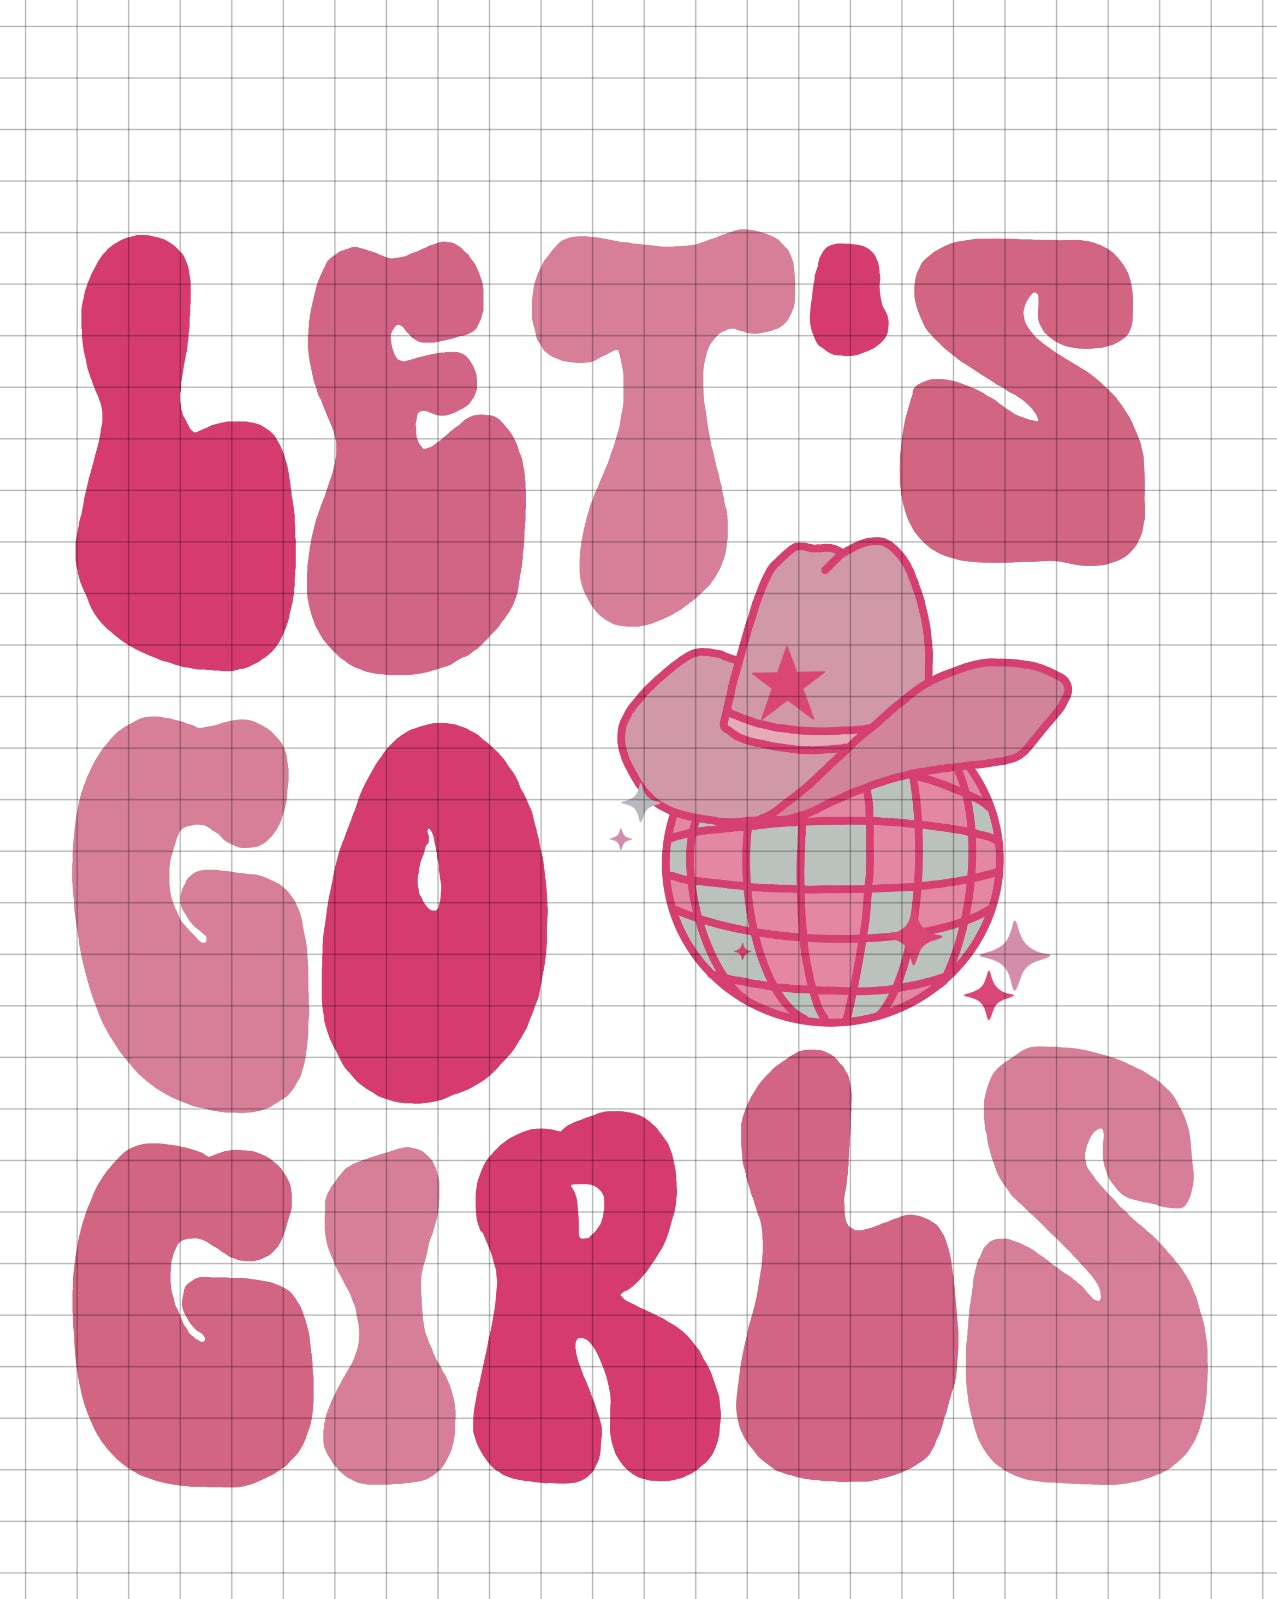 LET’S GO GIRLS PINK - transparent png file